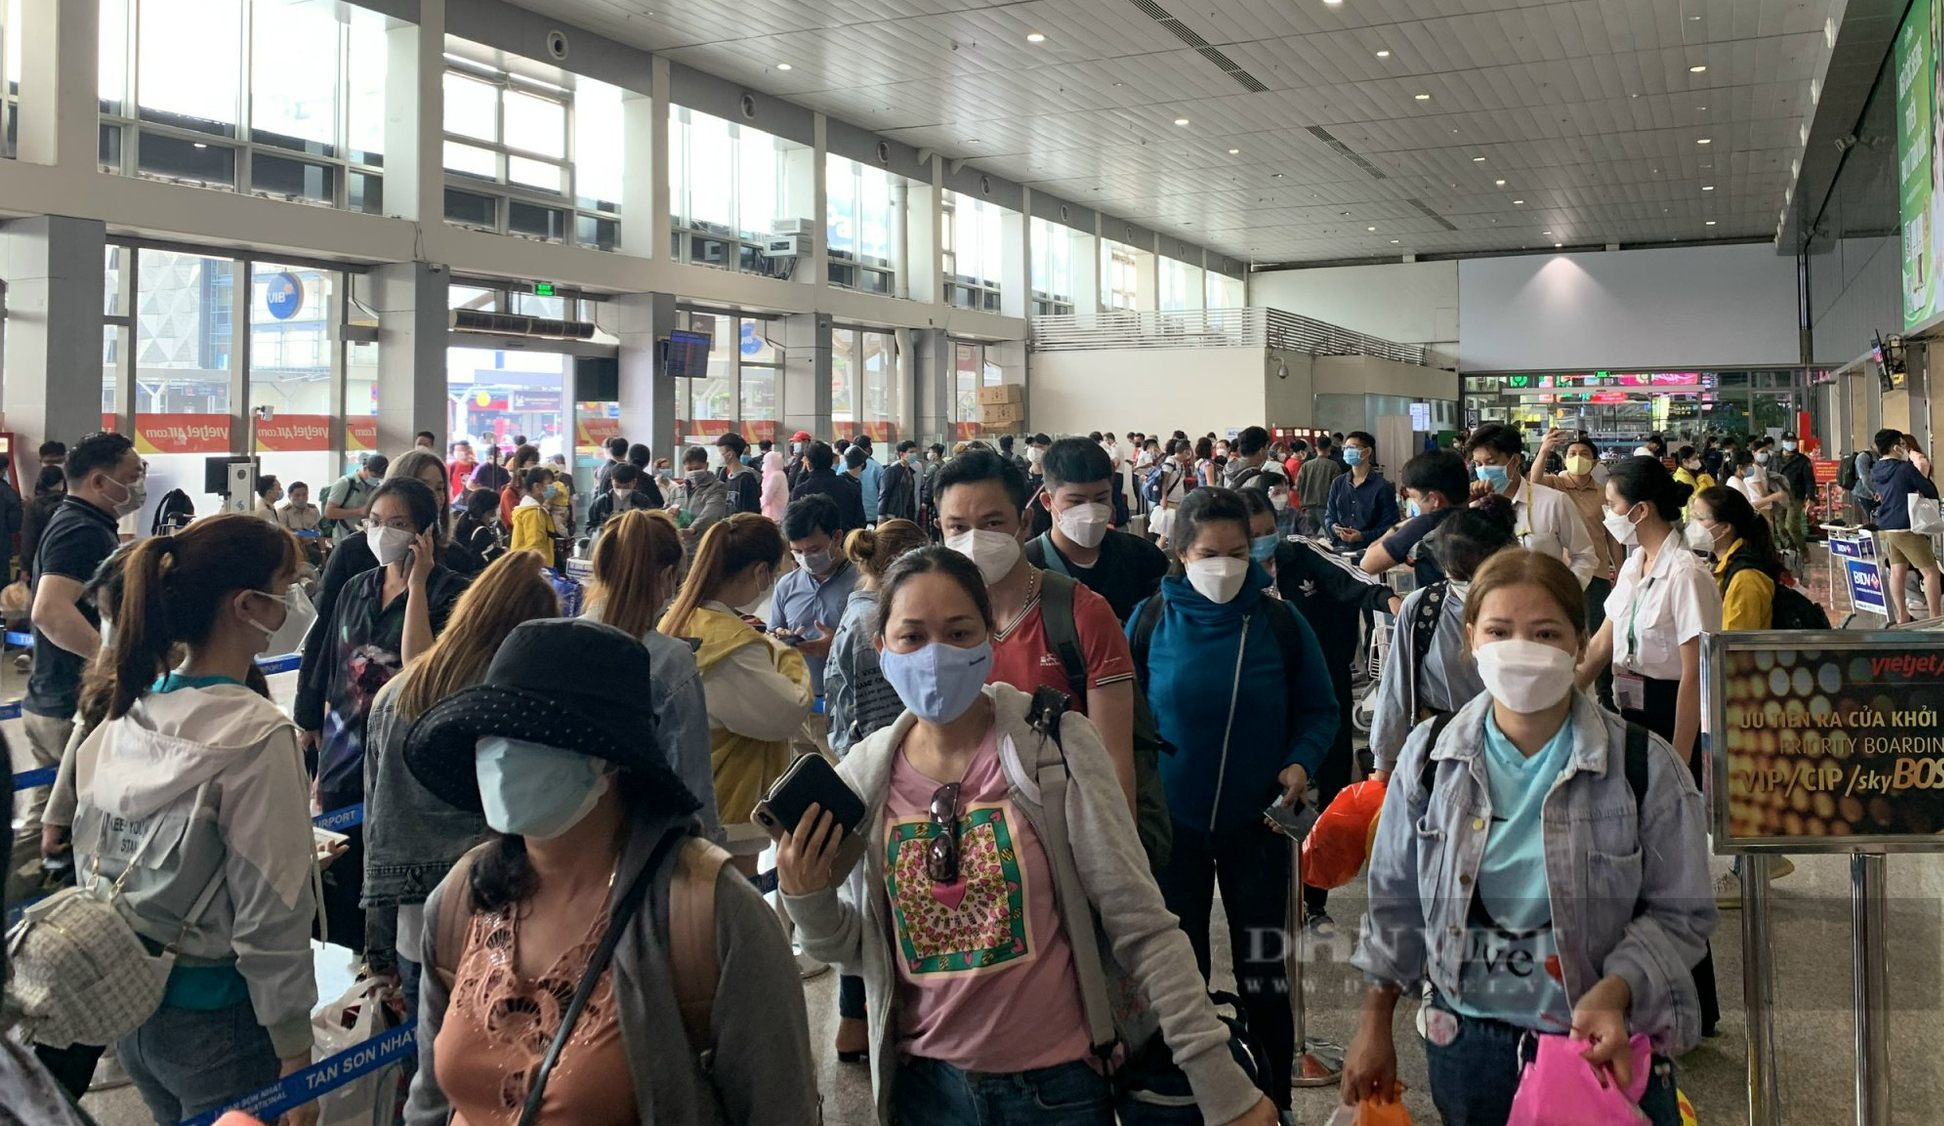 Tranh cãi việc hãng hàng không thu phí làm thủ tục nhanh ở Tân Sơn Nhất - Ảnh 5.